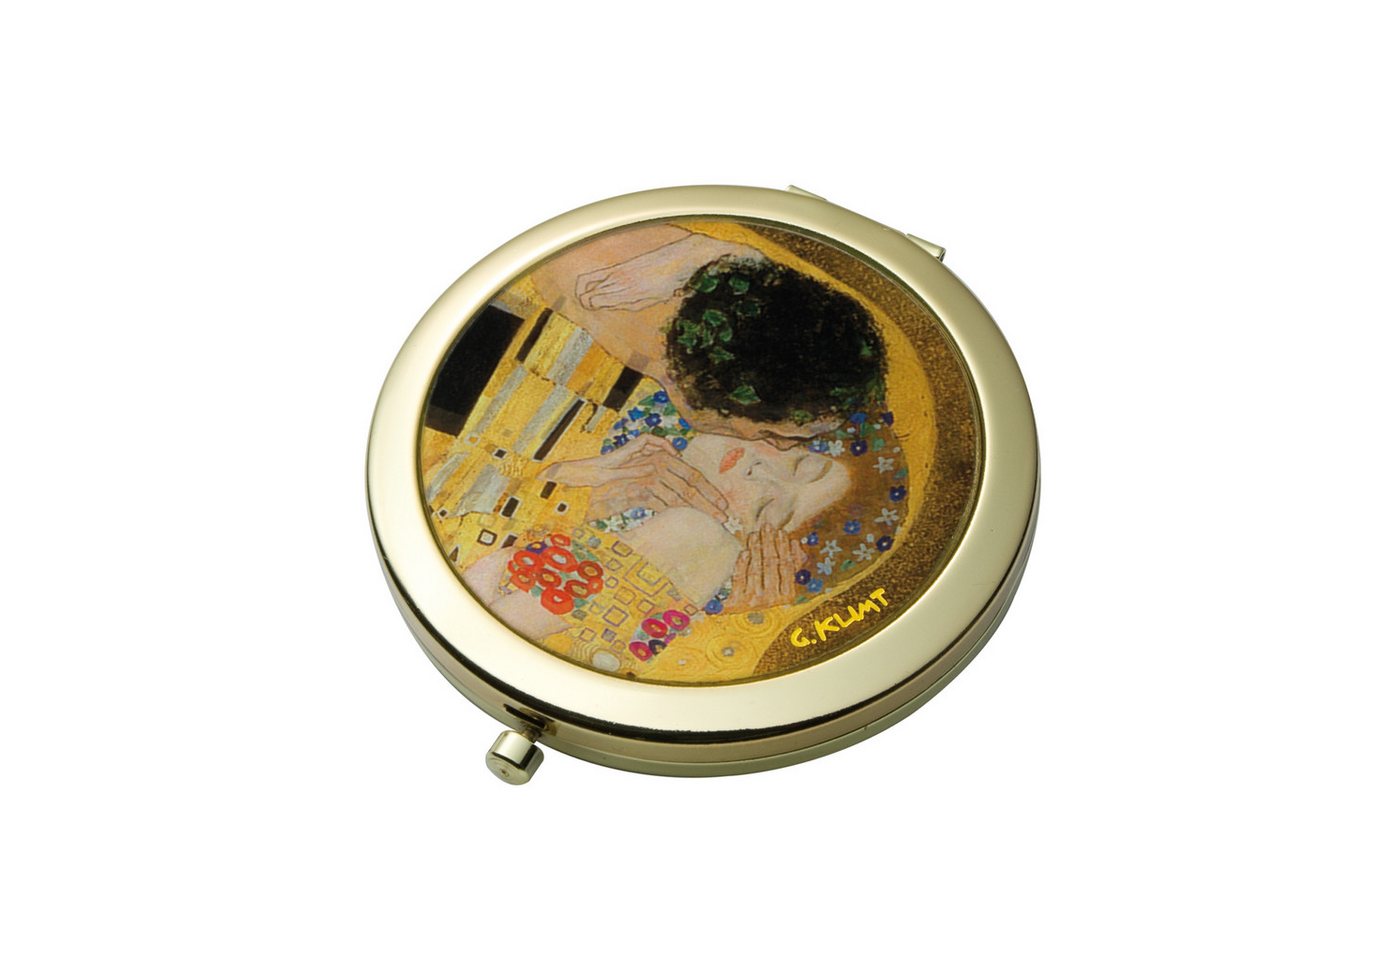 Goebel Taschenspiegel Goebel Artis Orbis Gustav Klimt 'Der Kuss - Taschenspiegel' von Goebel